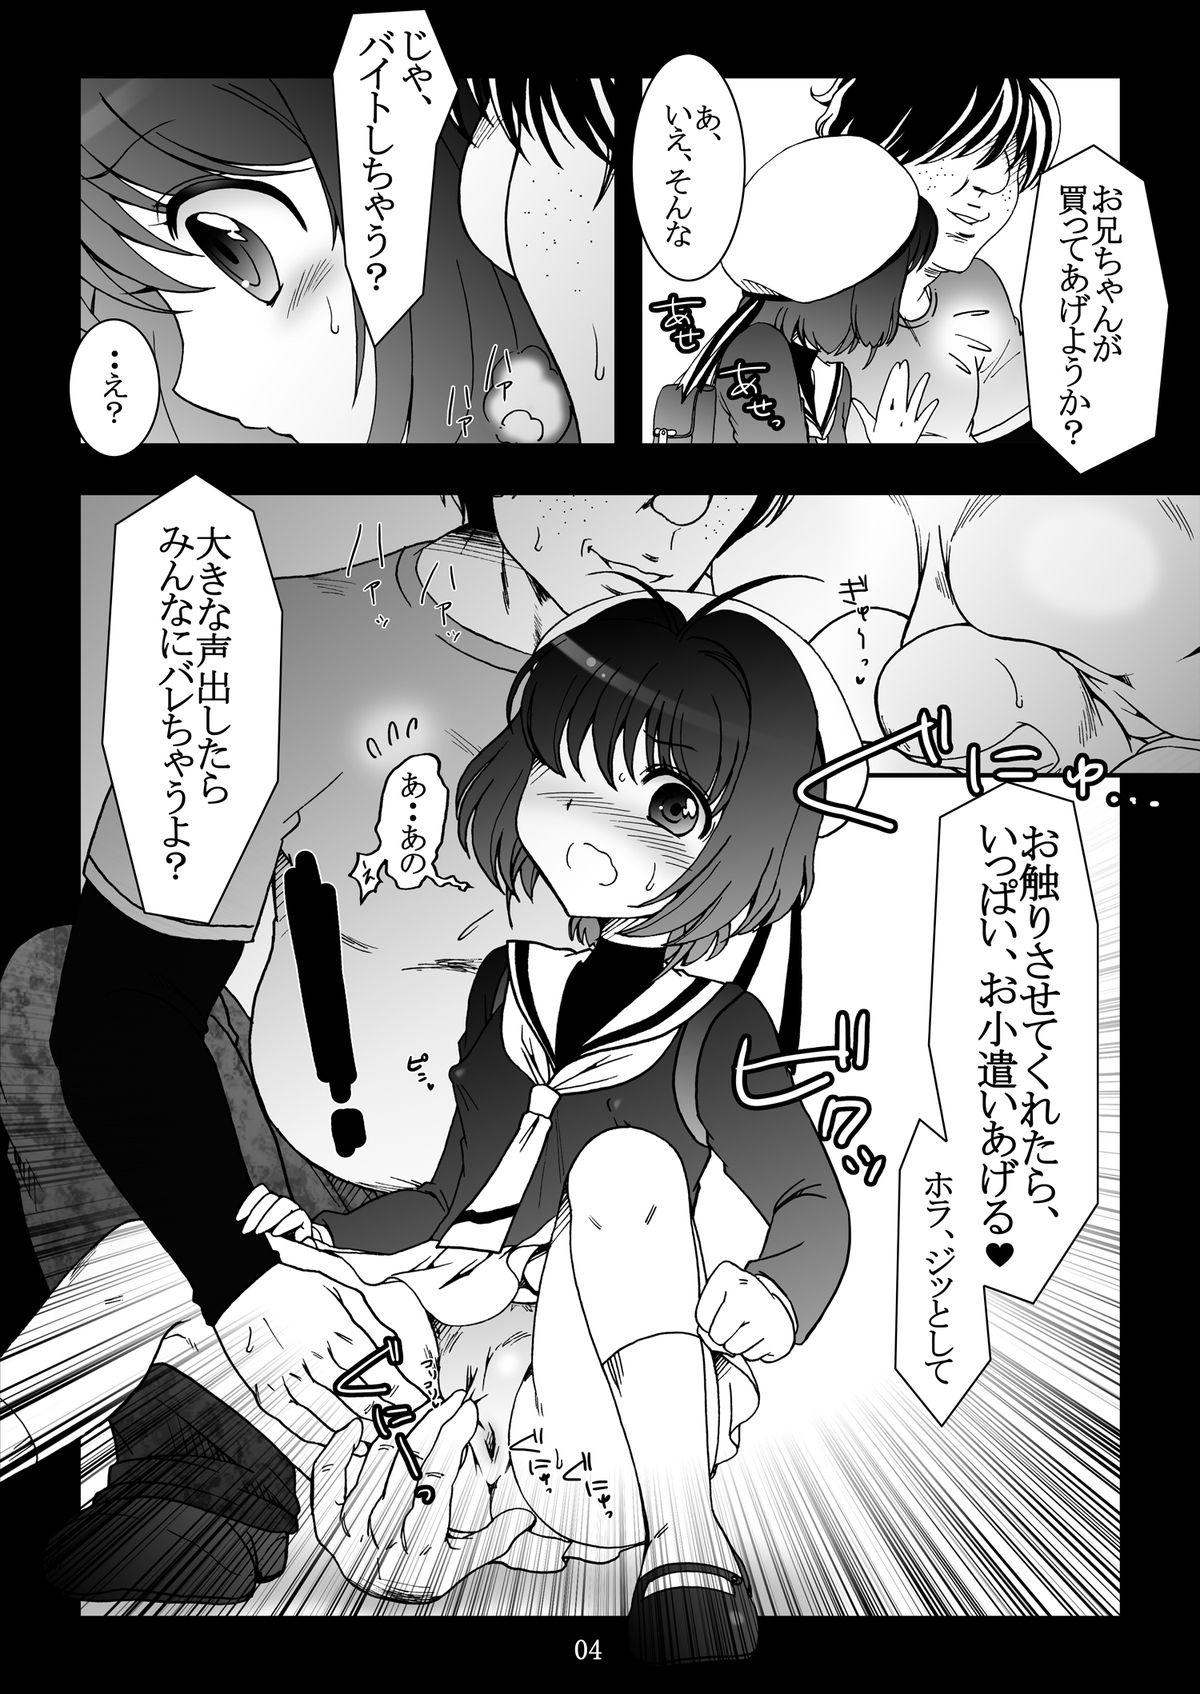 Missionary Position Porn Sakura Slave to the Grind - Cardcaptor sakura De Quatro - Page 4